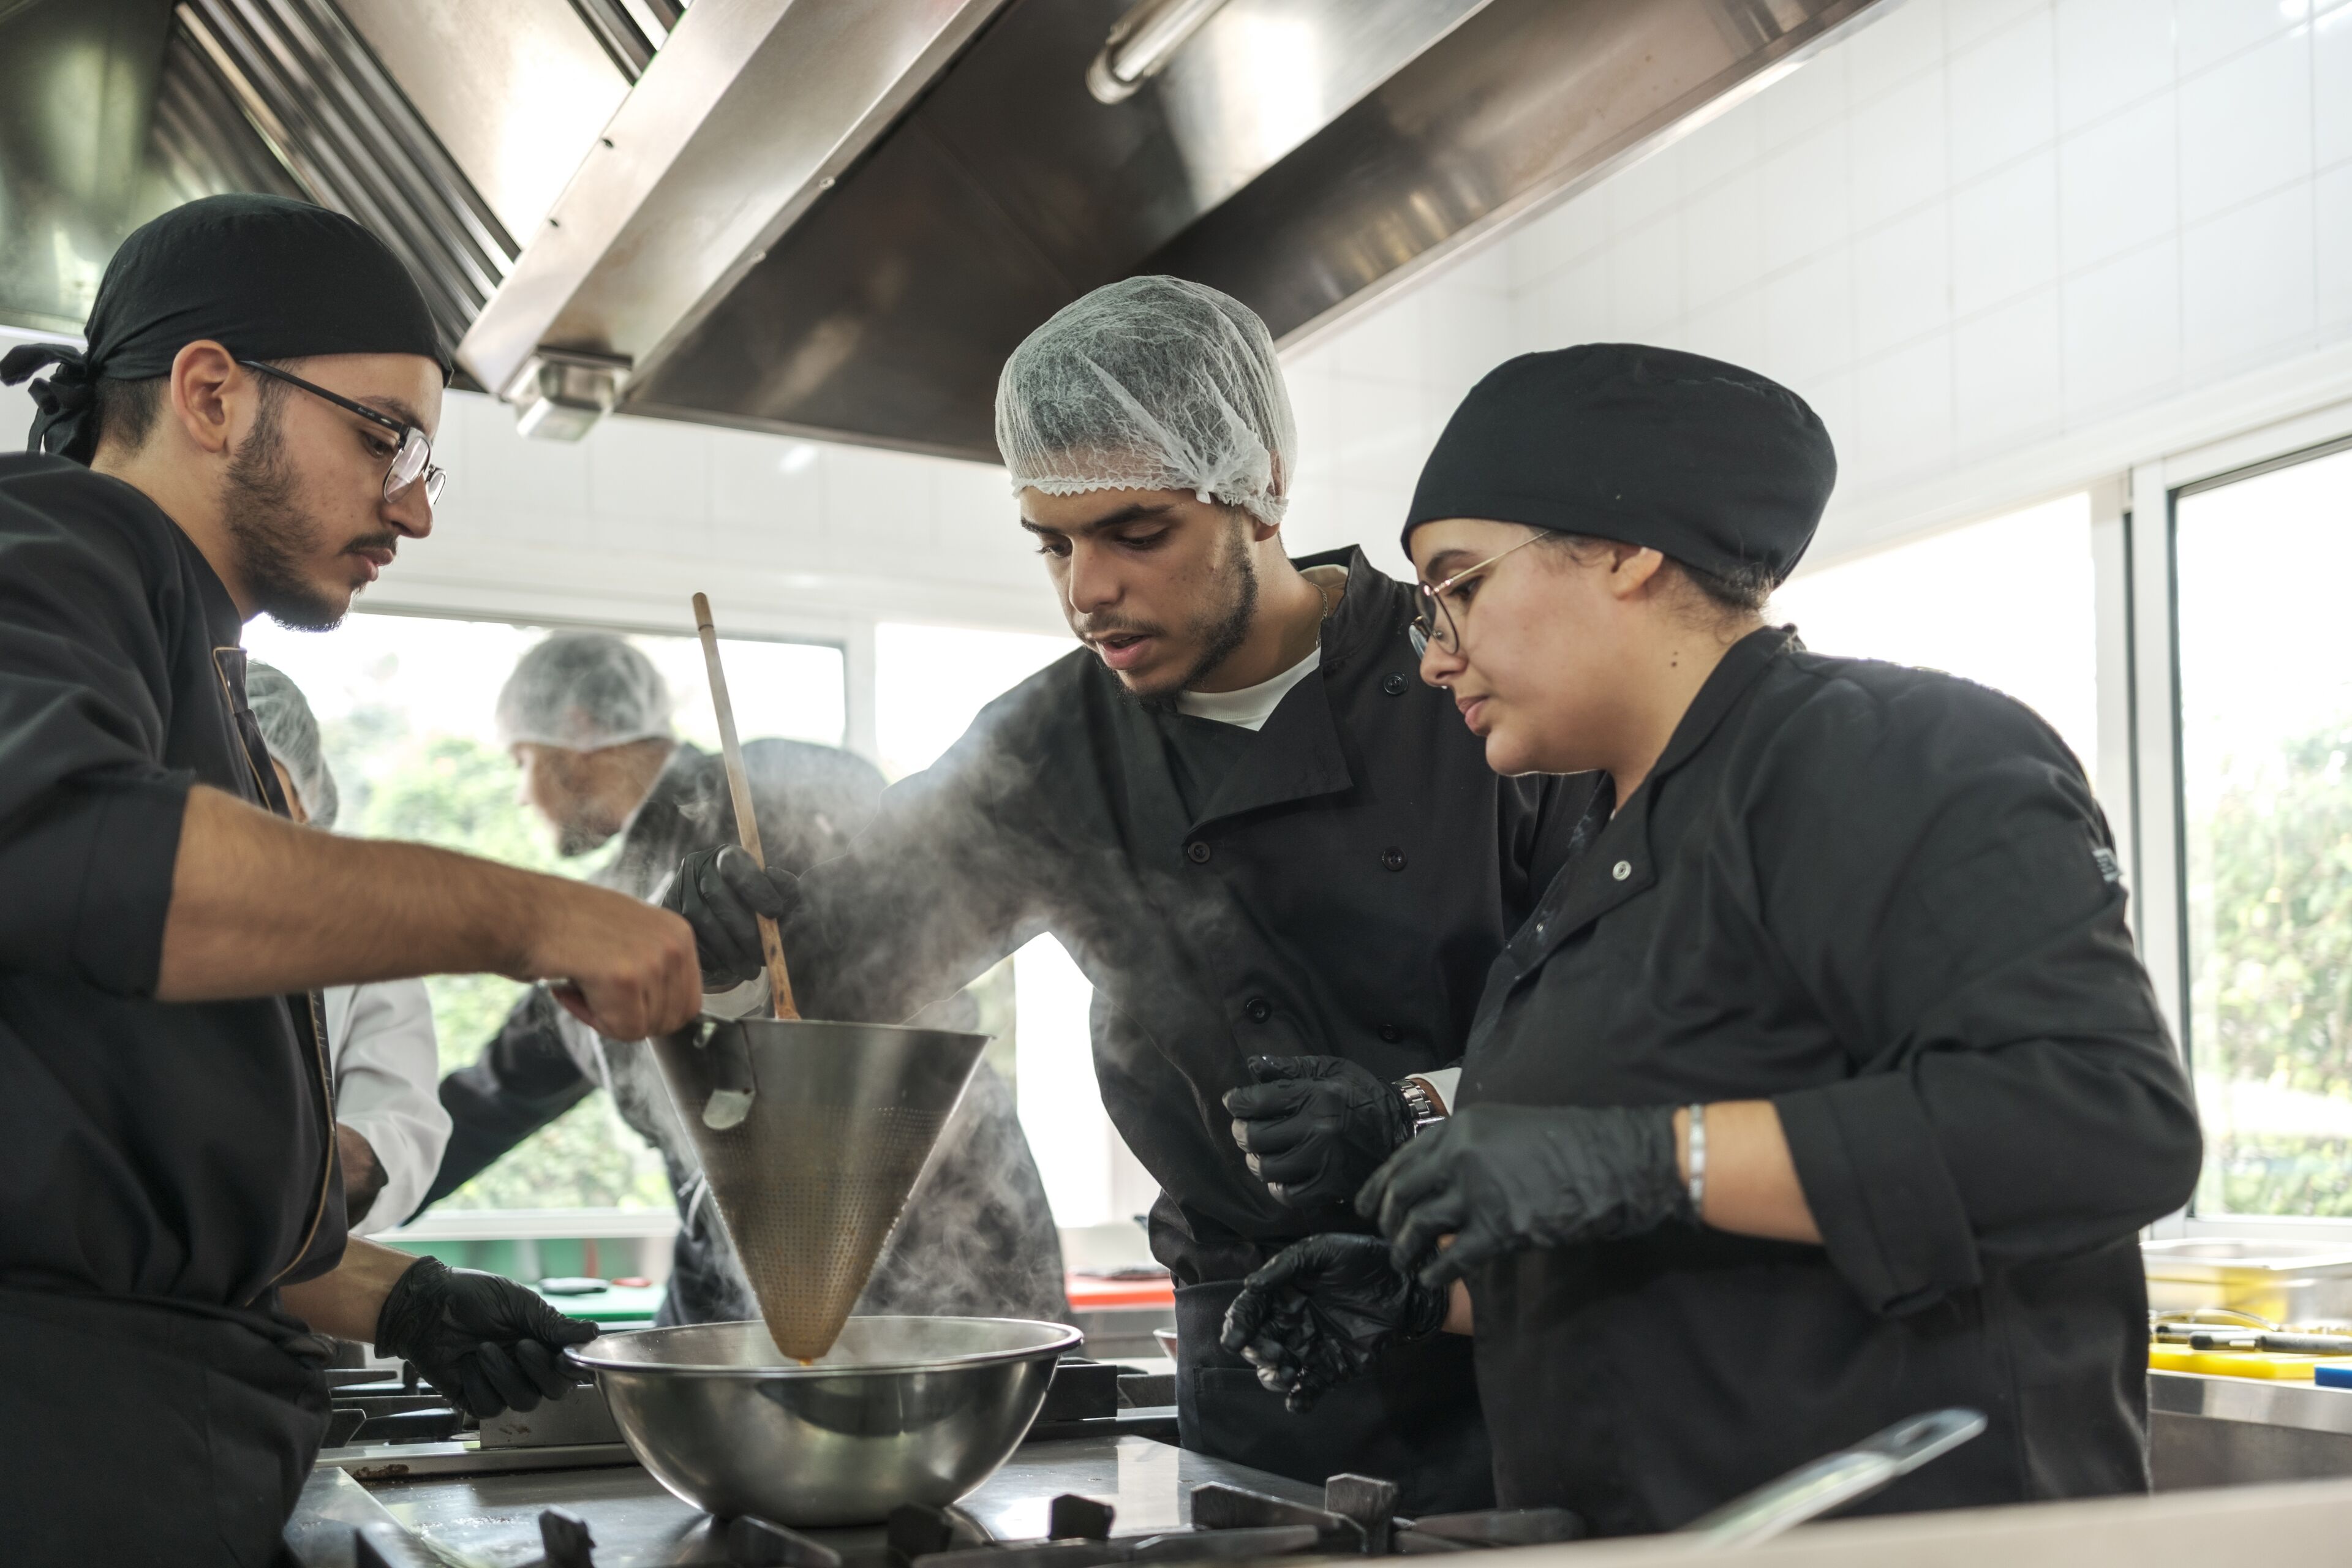 Une équipe de chefs dans une cuisine animée prépare un plat en collaboration avec concentration et expertise.